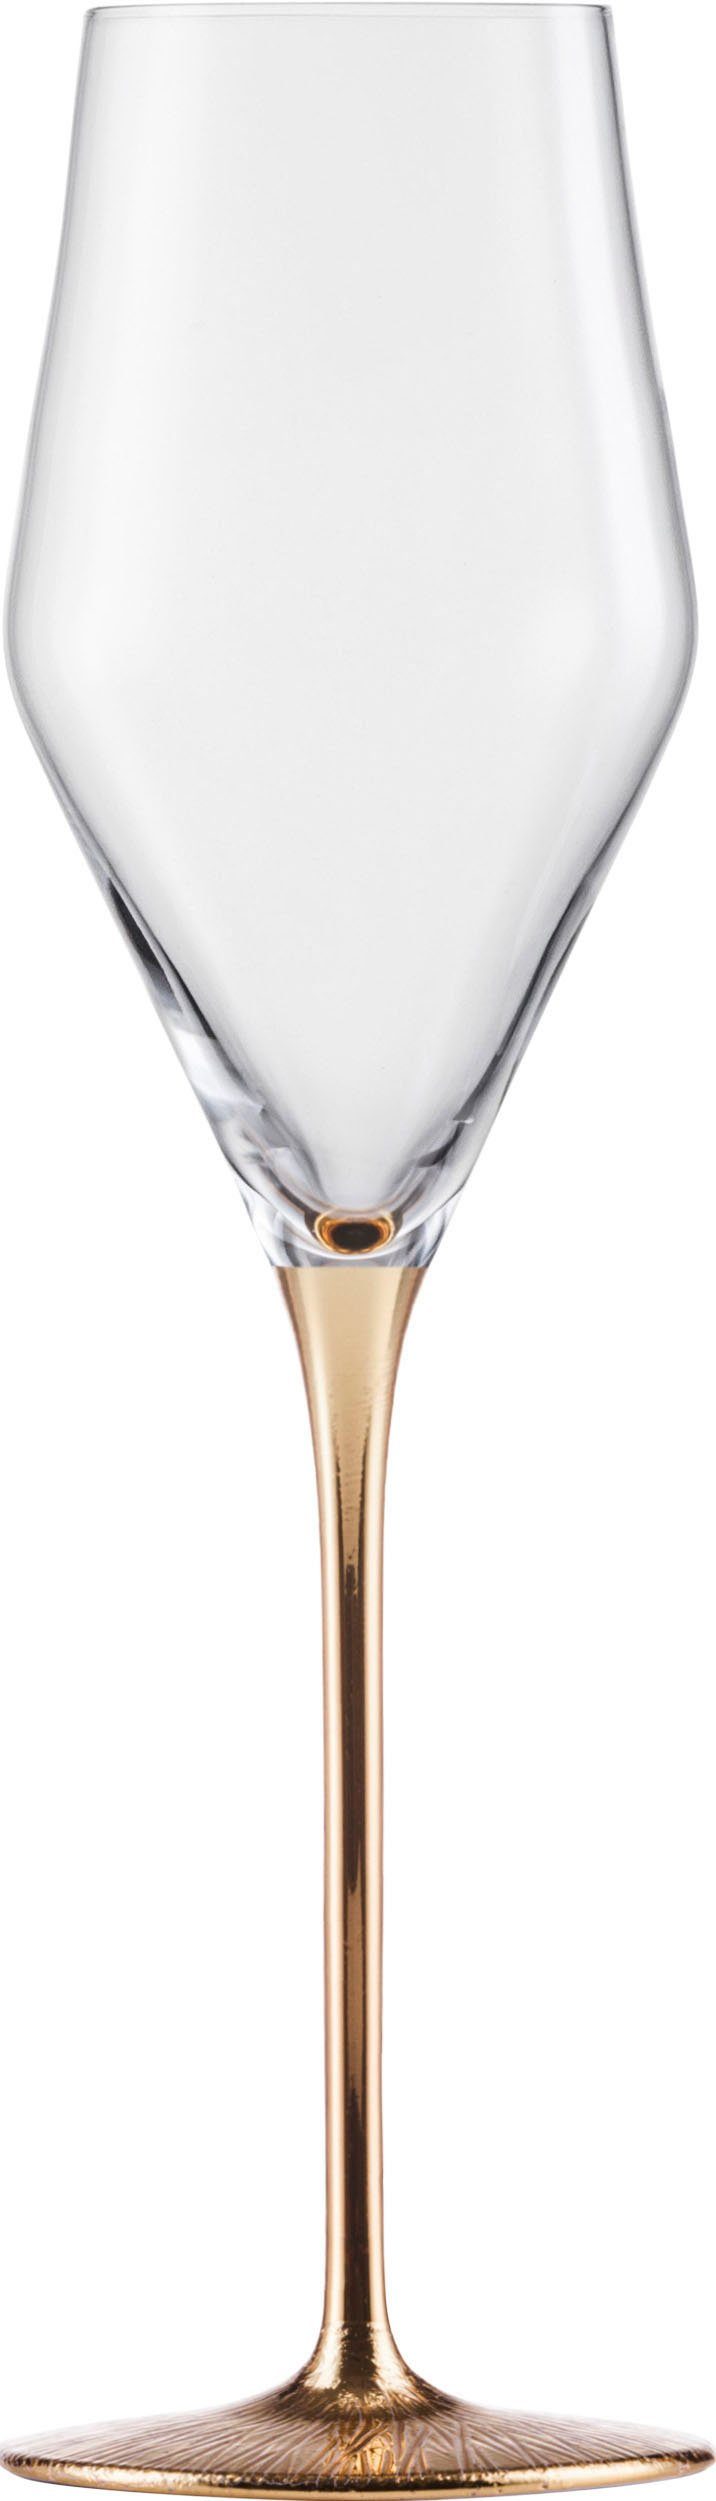 Eisch Champagnerglas RAVI GOLD, 260 ml, Made in Germany, Kristallglas, in  Handarbeit veredelt mit 24karätigem Gold, 260 ml, 2-teilig